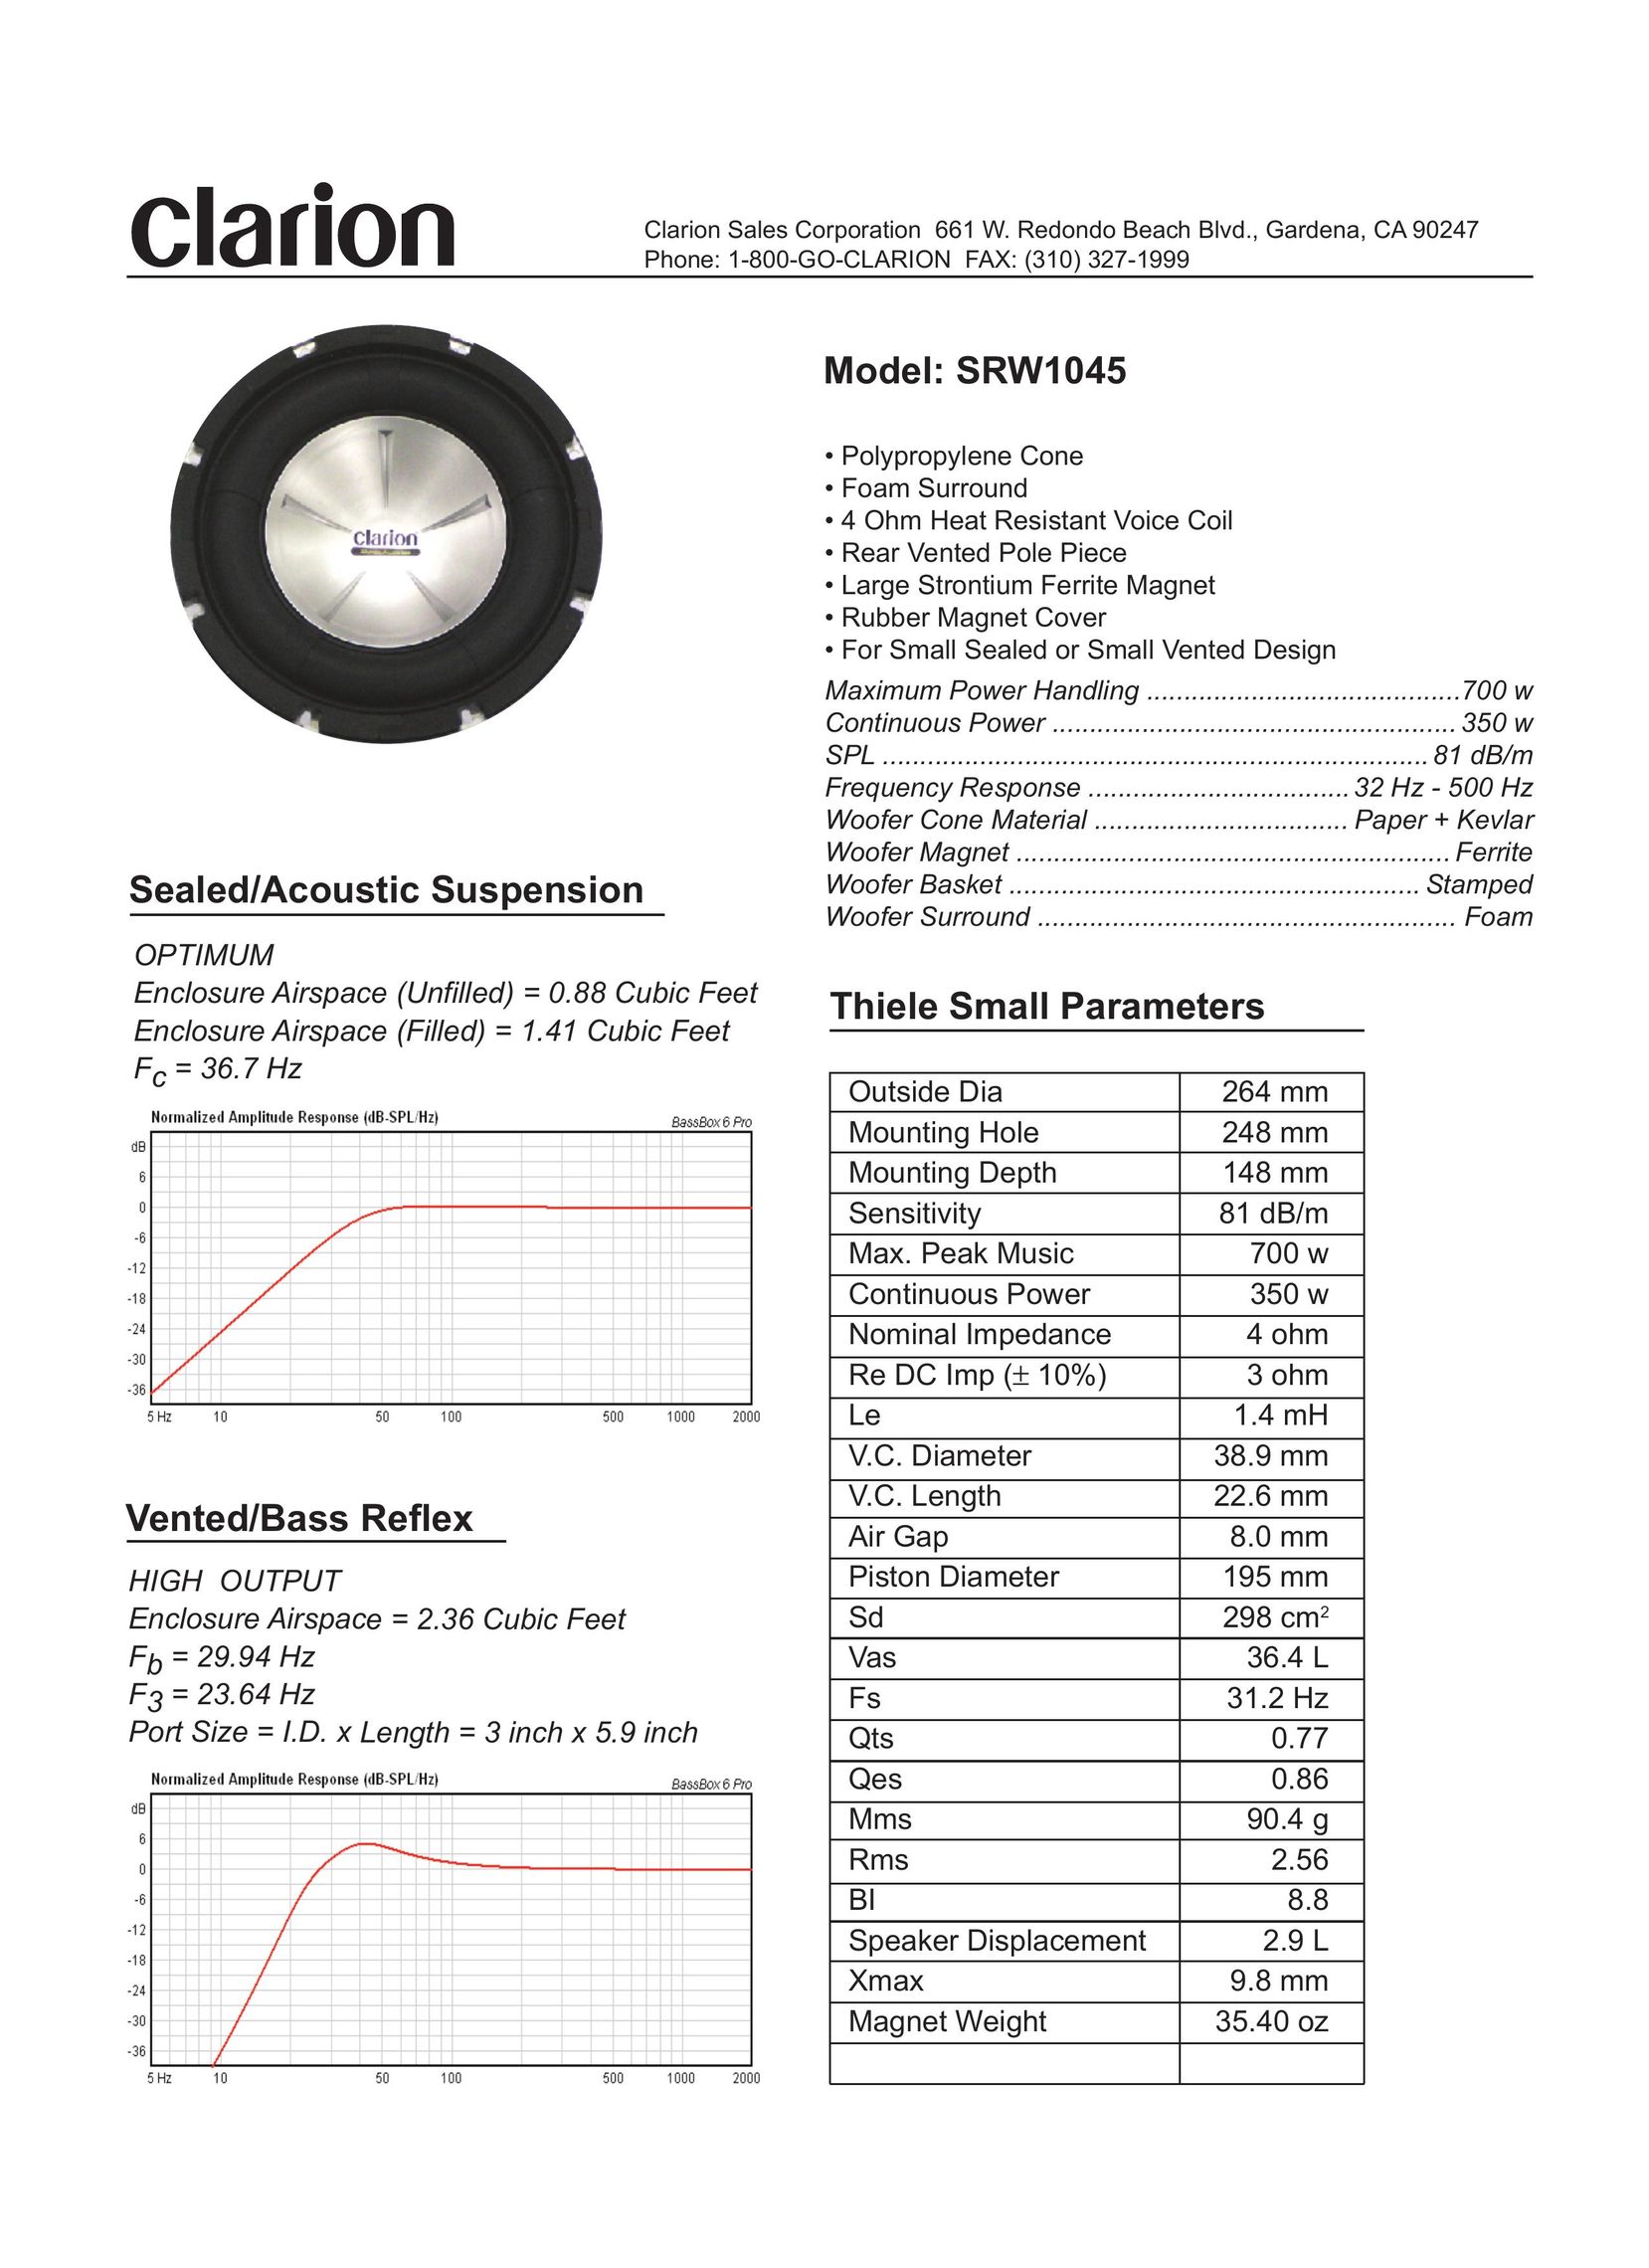 Clarion SRW1045 Car Speaker User Manual